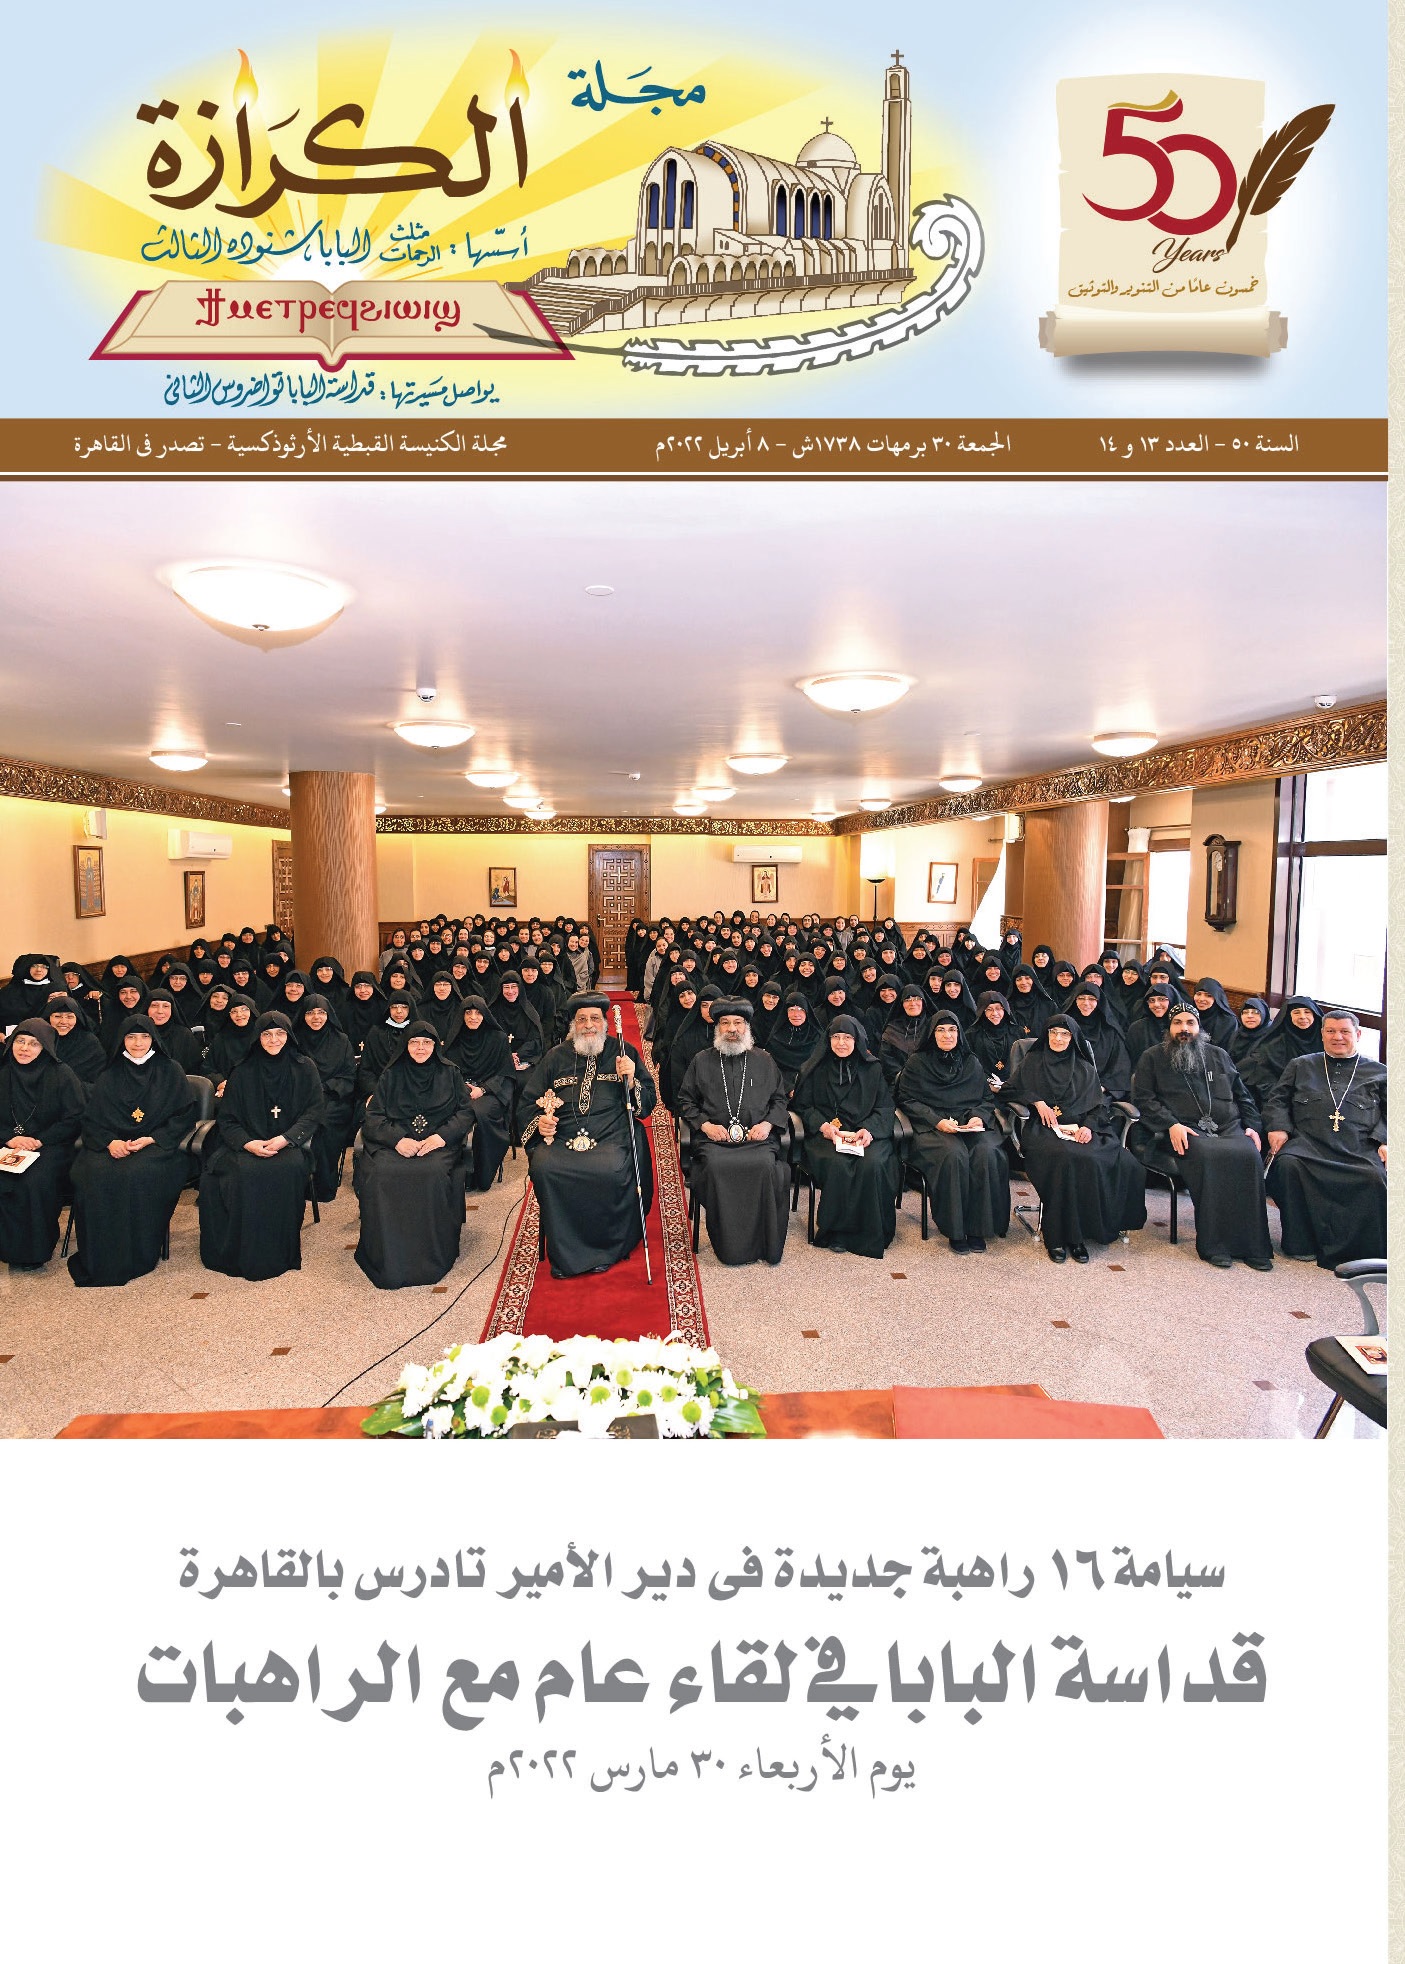 سيامة 16 راهبة جديدة فى دير الأمير تادرس بالقاهرة